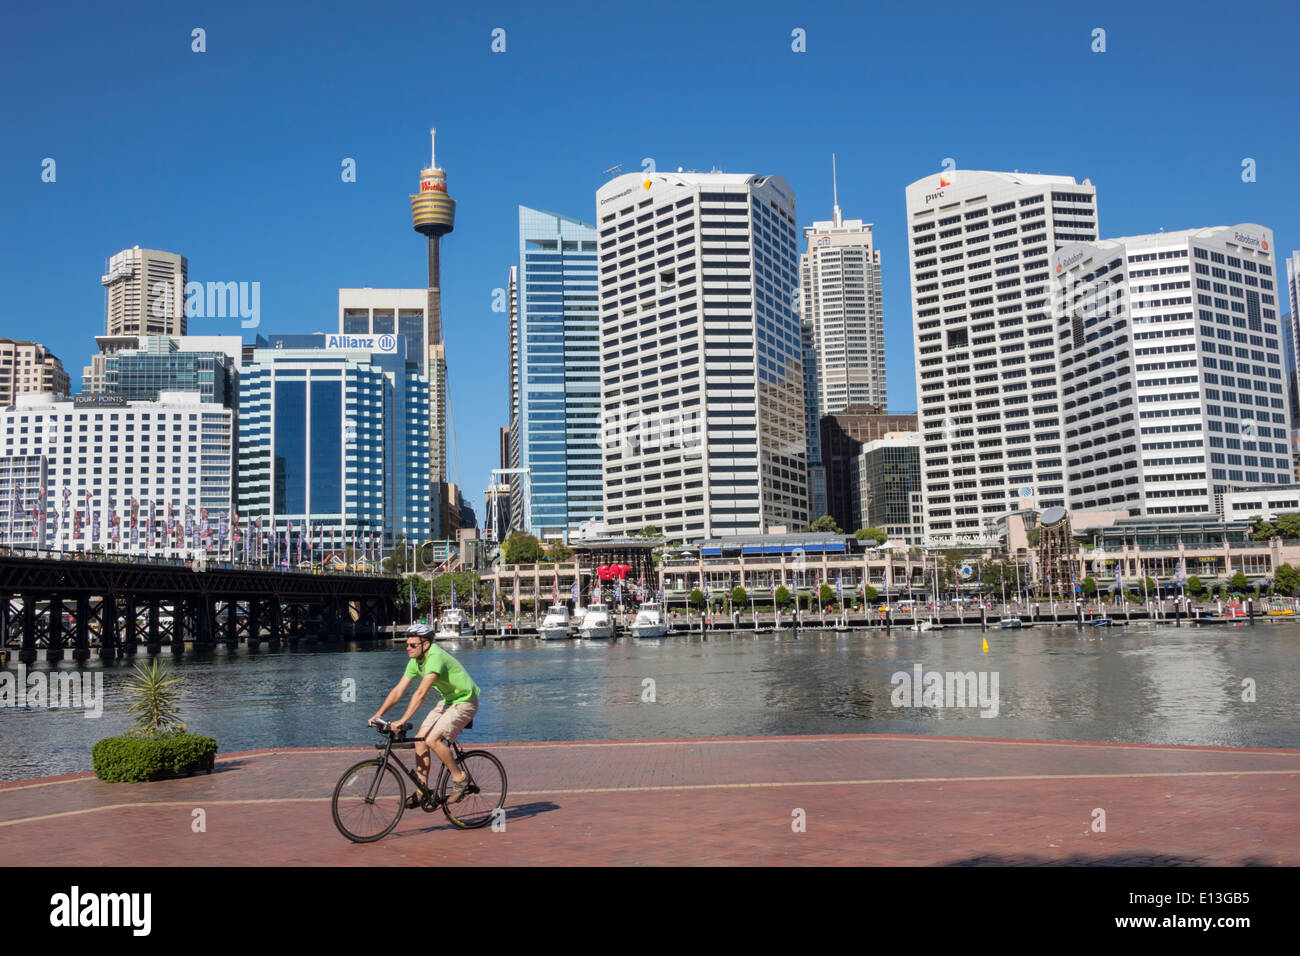 Sydney Australien, Darling Harbour, Hafen, Cockle Bay Promenade, Kai, Wasser, Wolkenkratzer, Skyline der Stadt, Männer männlich, Fahrrad, Radfahren, Reiten, Radfahren, Fahrer, b Stockfoto